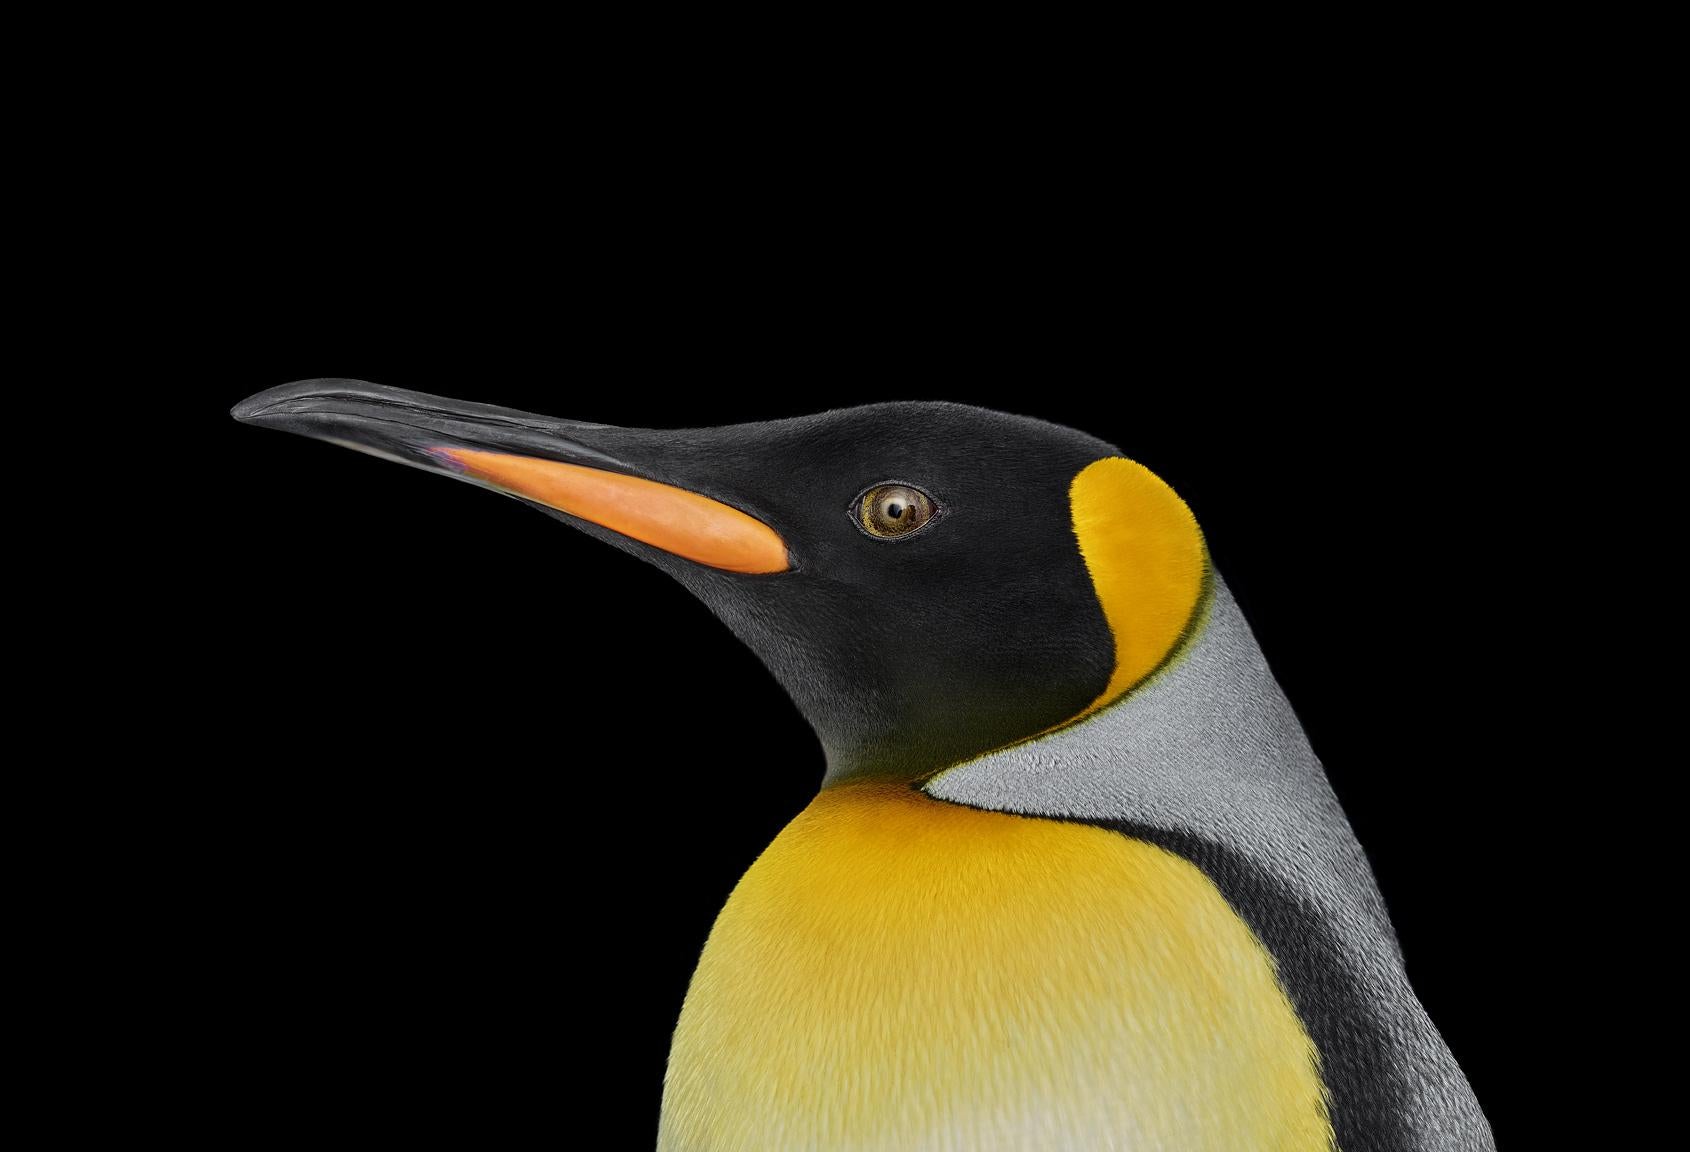 'King Penguin #1, Albuquerque, New Mexico, USA, 2019' est une photographie en édition limitée de l'artiste contemporain Brad Wilson, issue de la série 'Affinity' qui présente des portraits d'animaux sauvages réalisés en studio. 

Cette photographie